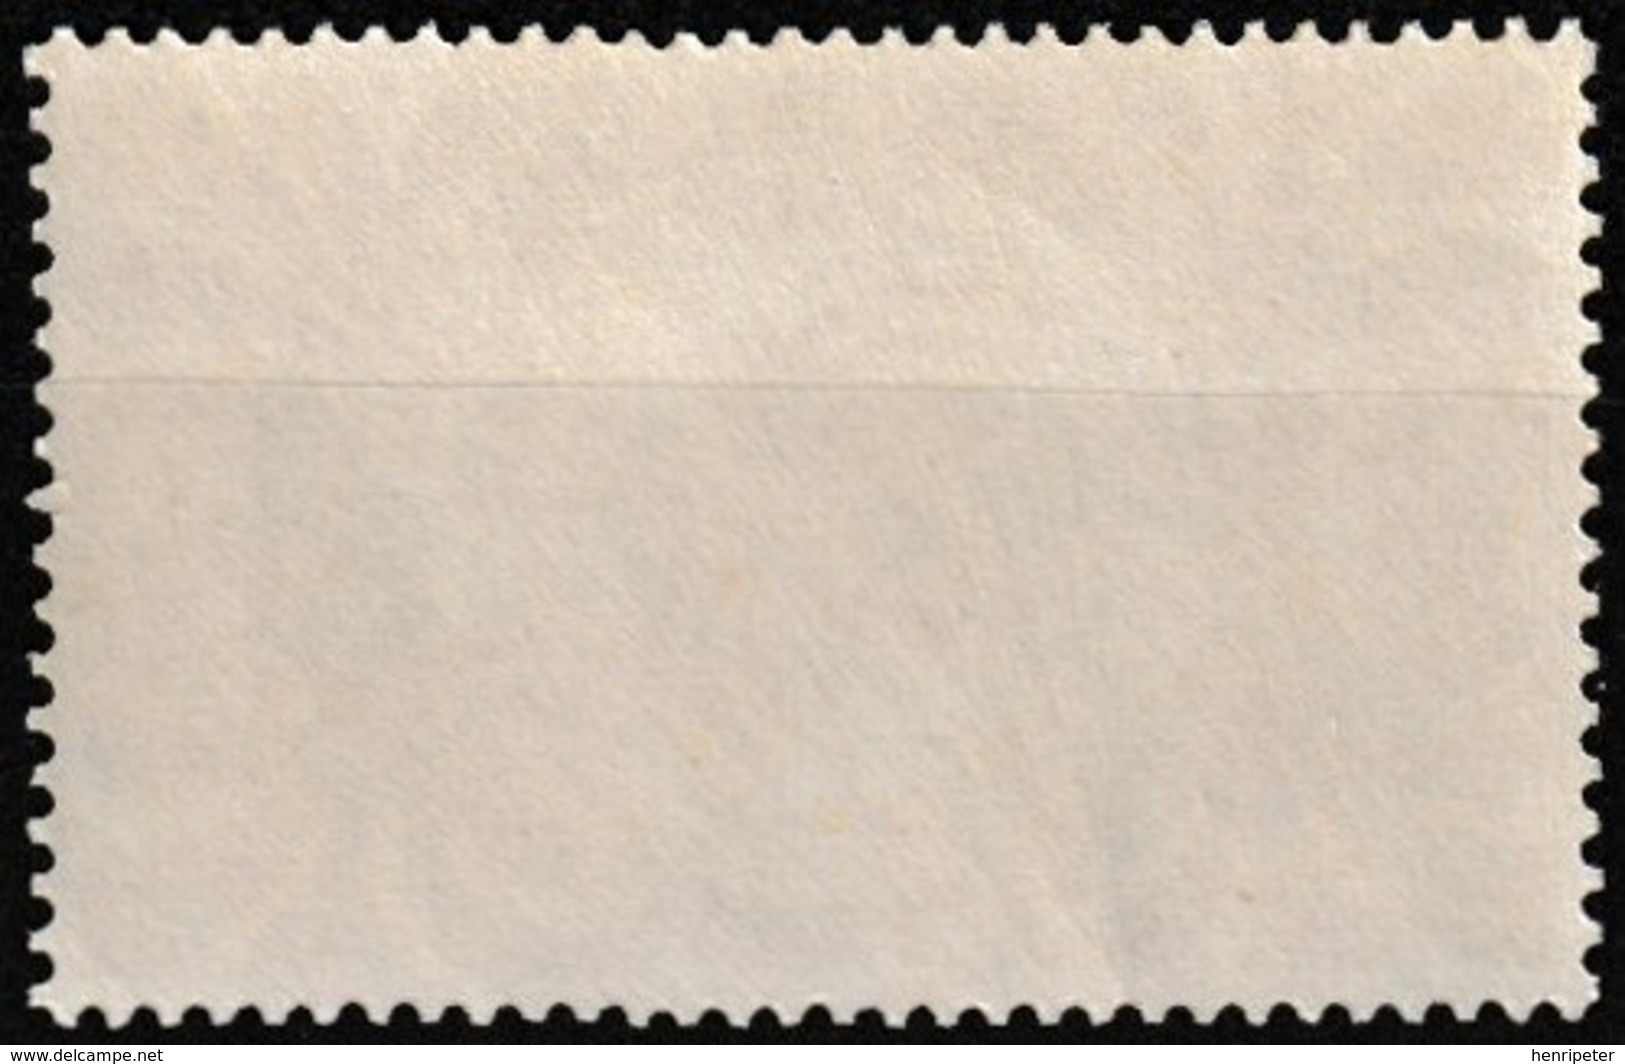 Timbre-poste Gommé Neuf** - Série De Londres Cagou - N° 230 (Yvert) - Nouvelle-Calédonie Et Dépendances 1942 - Ongebruikt